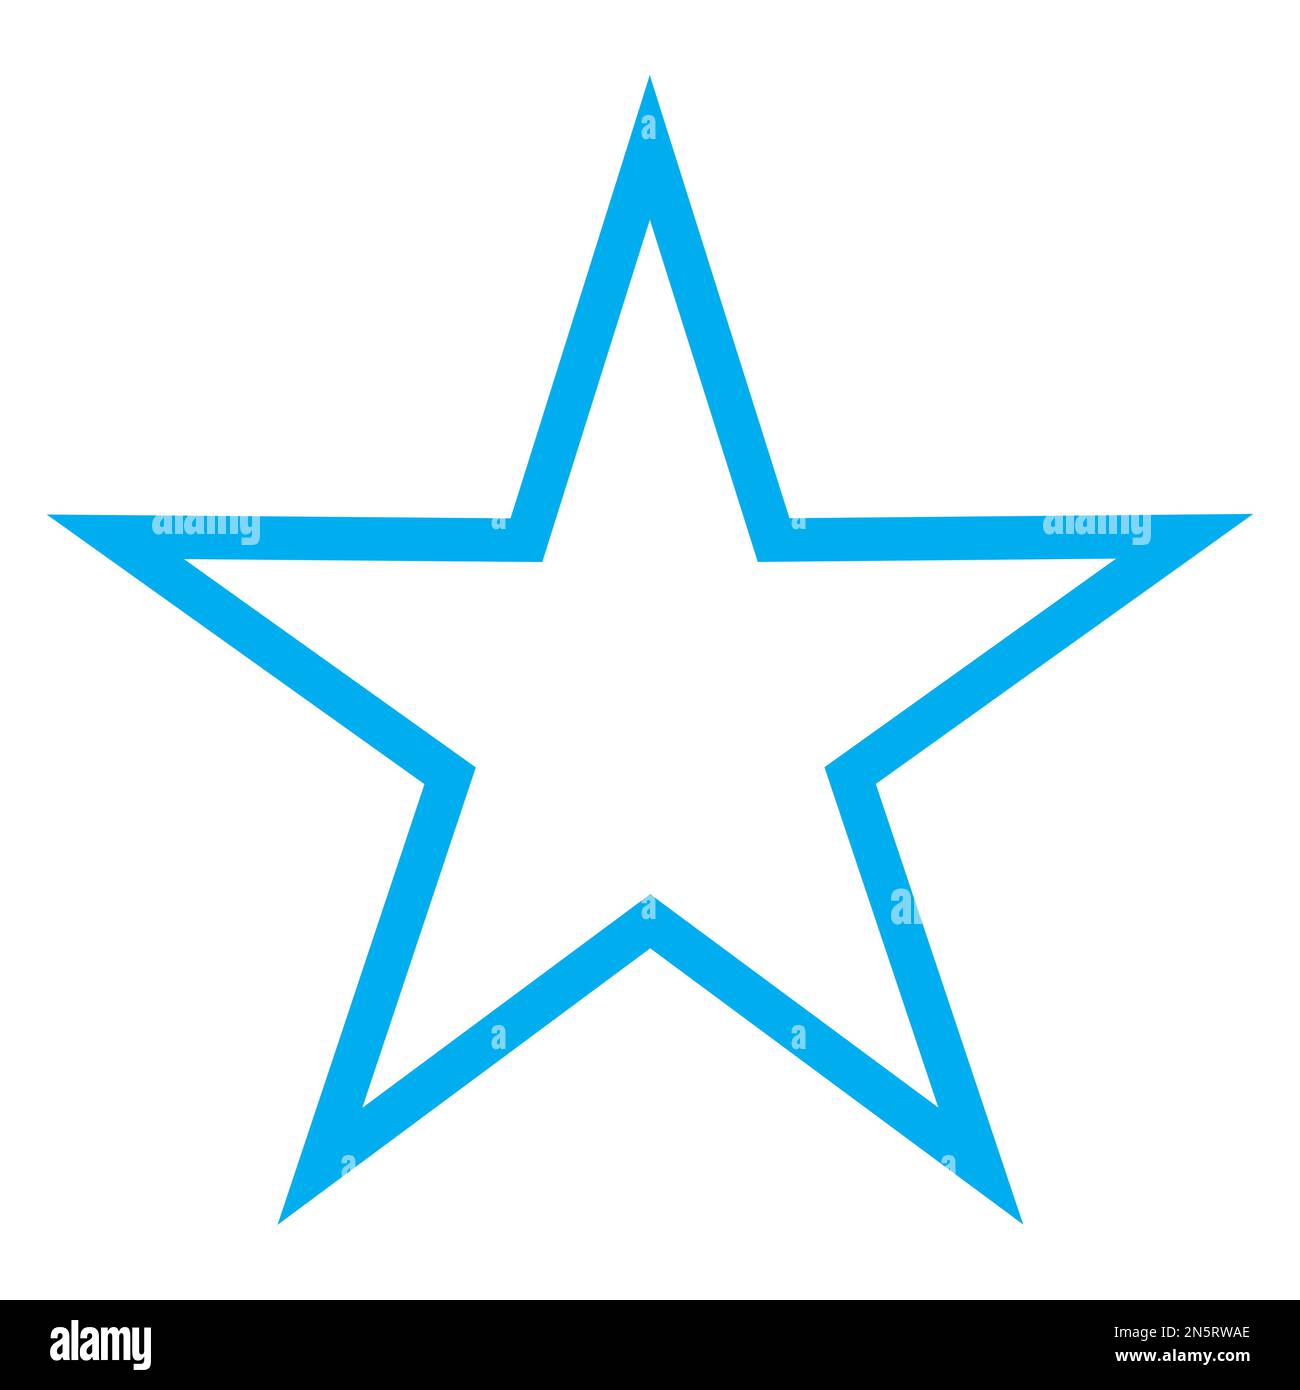 Graphique vectoriel bleu et blanc d'un symbole de carte pour une autre caractéristique touristique. Il se compose d'une étoile bleue à cinq pointes d'un fond blanc Illustration de Vecteur